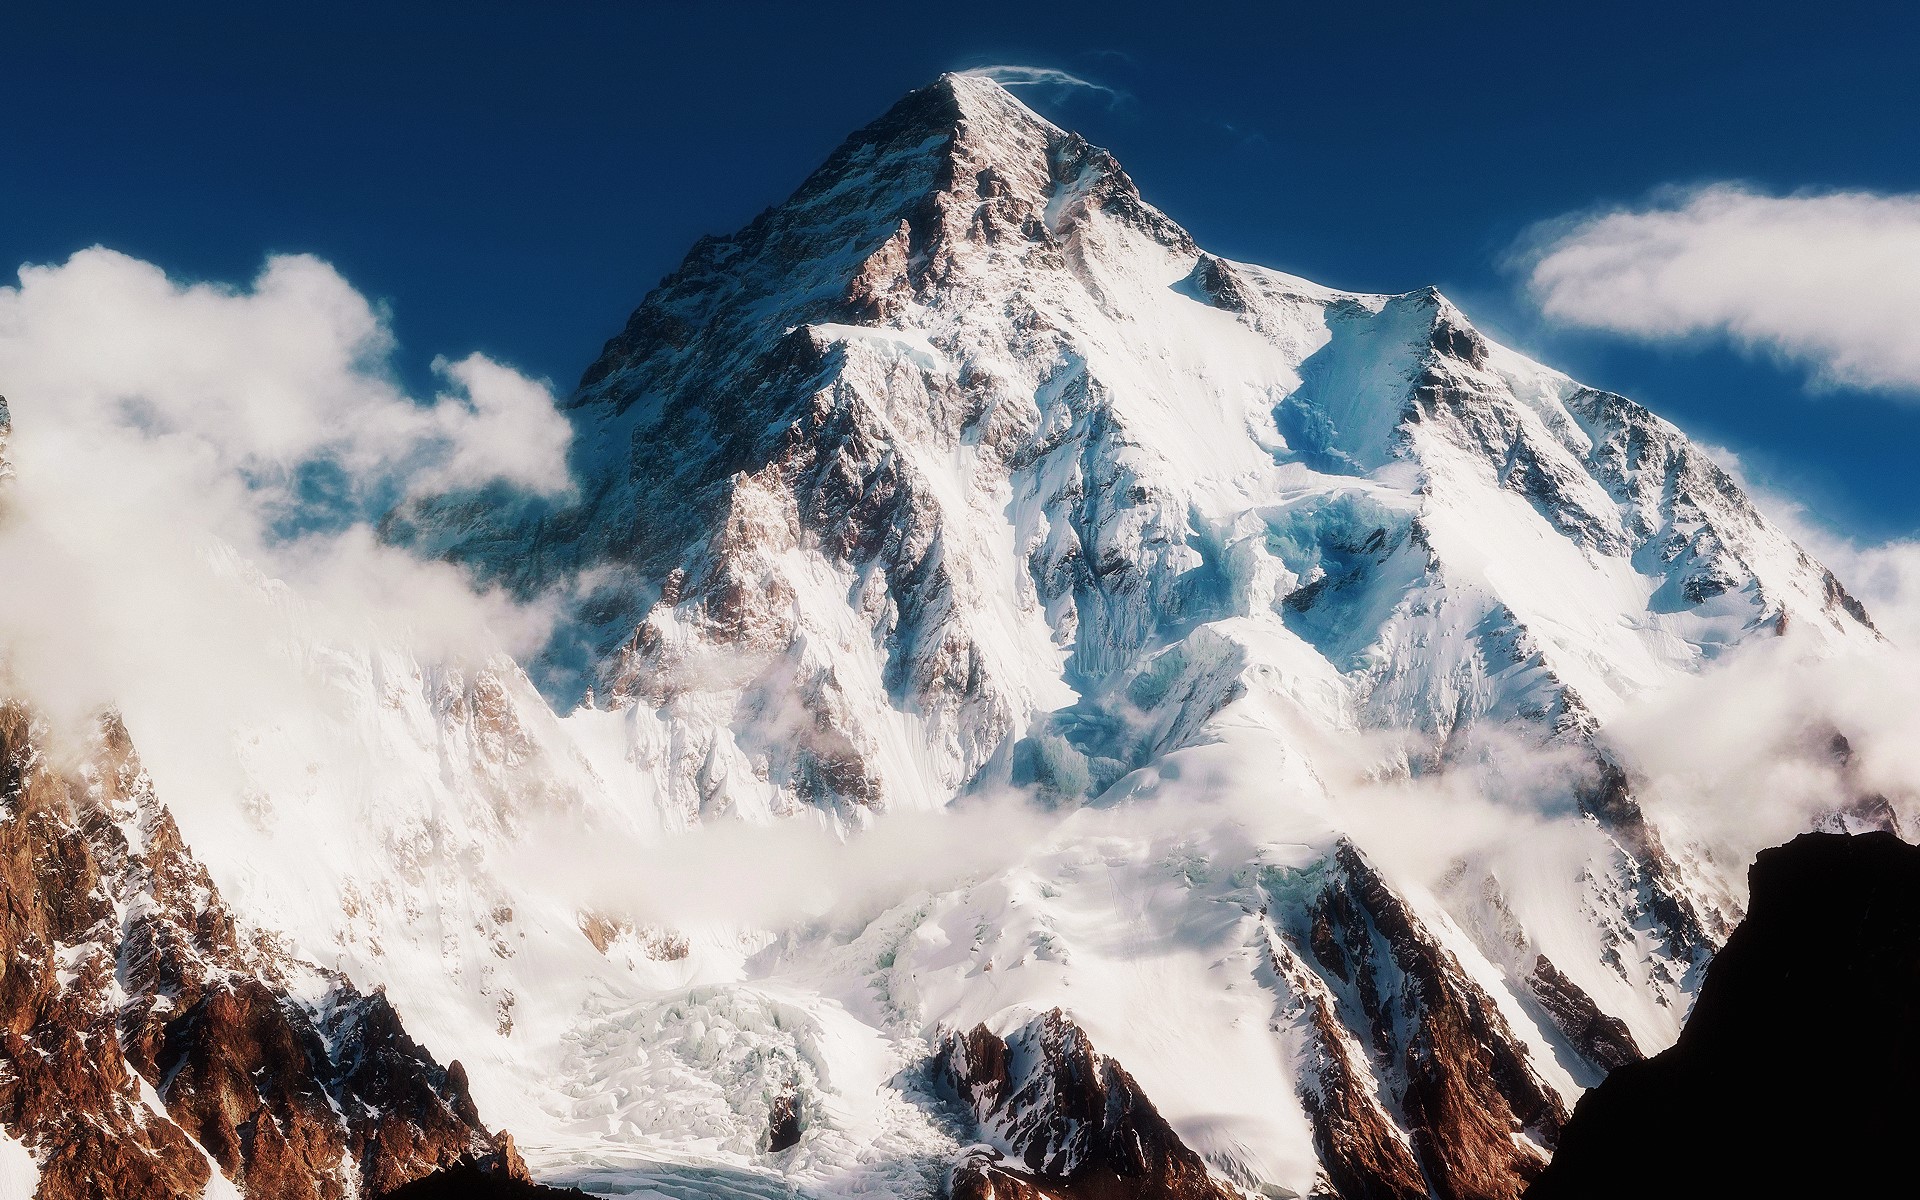 Second highest tallest peak K2 mountain